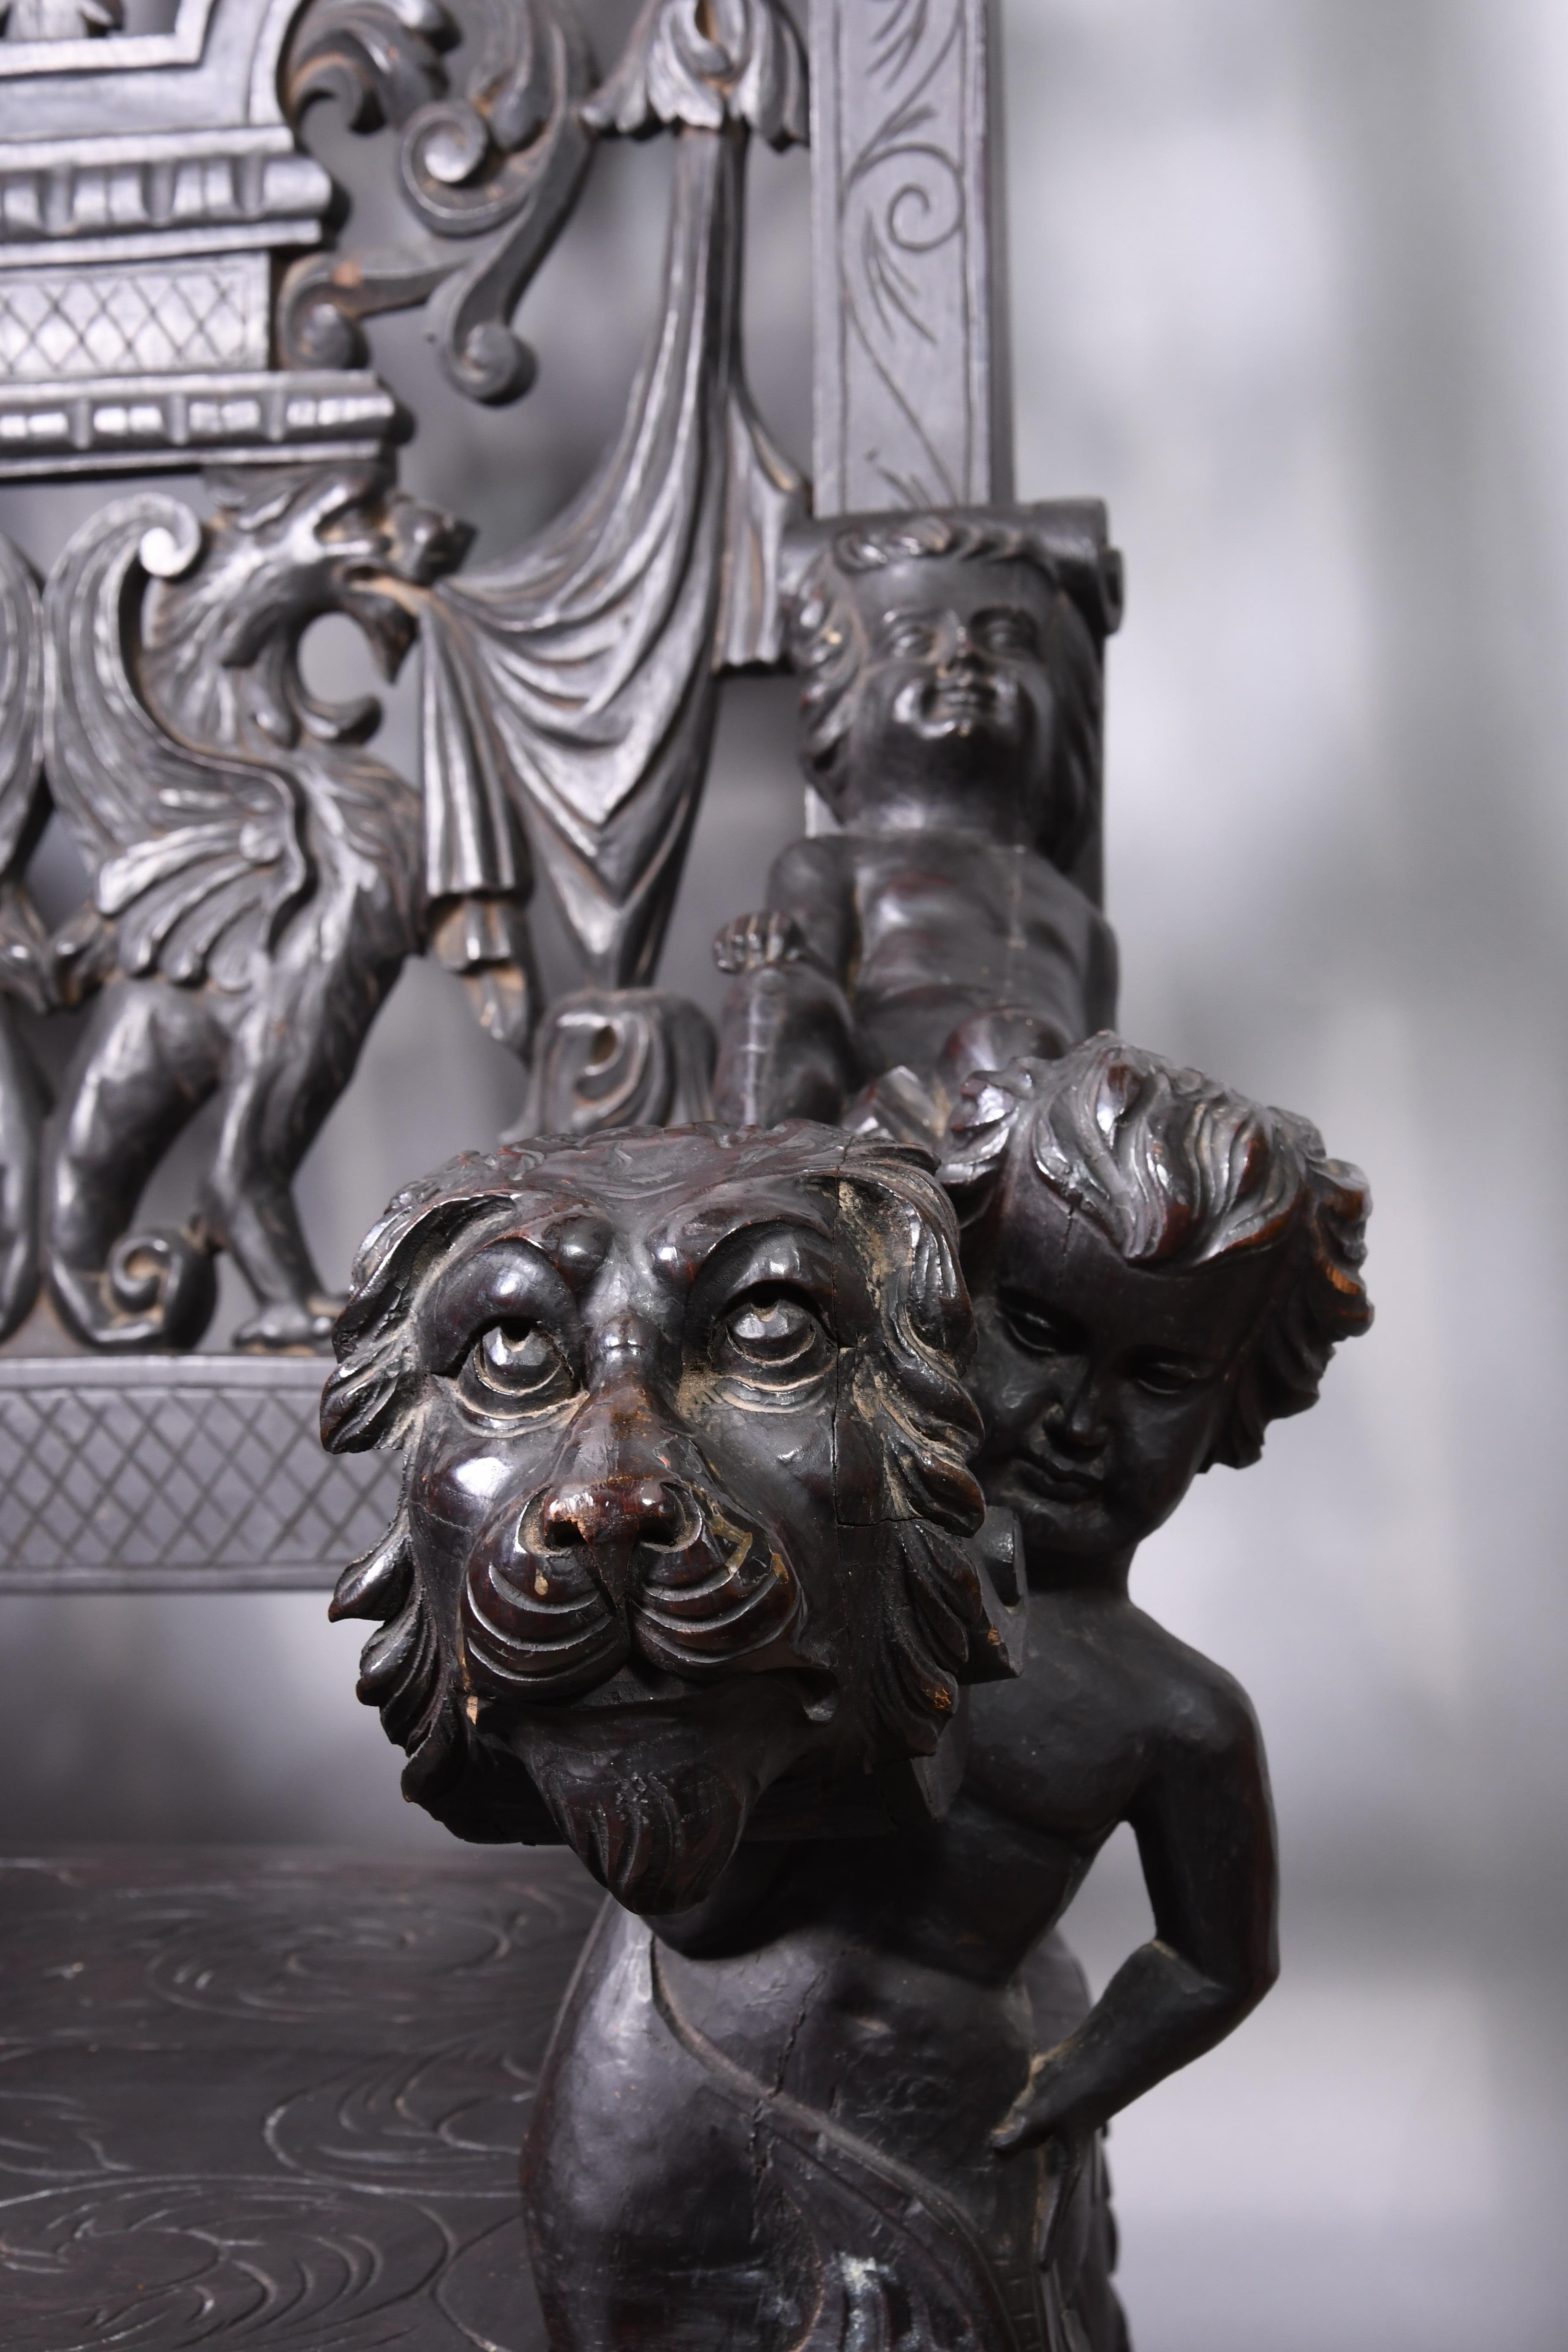 Trône entièrement sculpté avec des détails de la Renaissance tels que des chérubins, des têtes de lions, des feuillages et un dieu du vent. Les pieds sont en cabriole avec des feuilles d'acanthe, des genoux sculptés et des pieds en volute. Il est